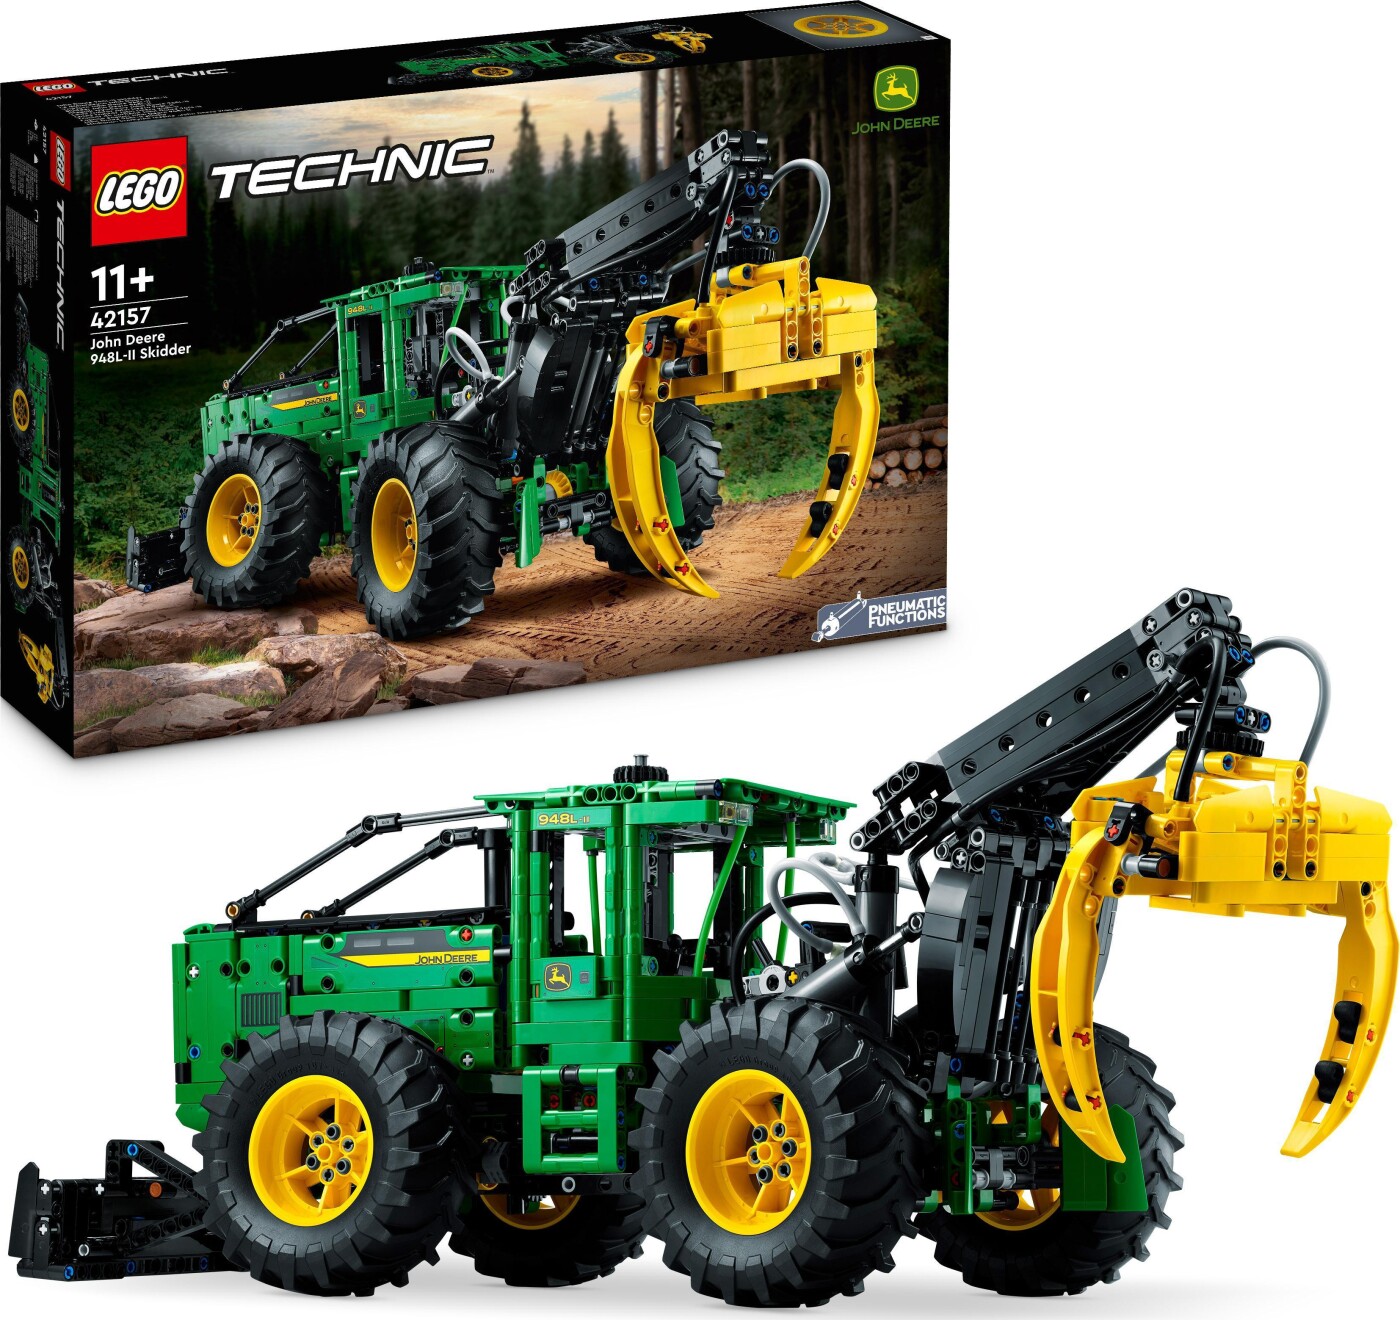 Billede af Lego Technic - John Deere 948l-ii Traktor Skovmaskine - 42157 hos Gucca.dk